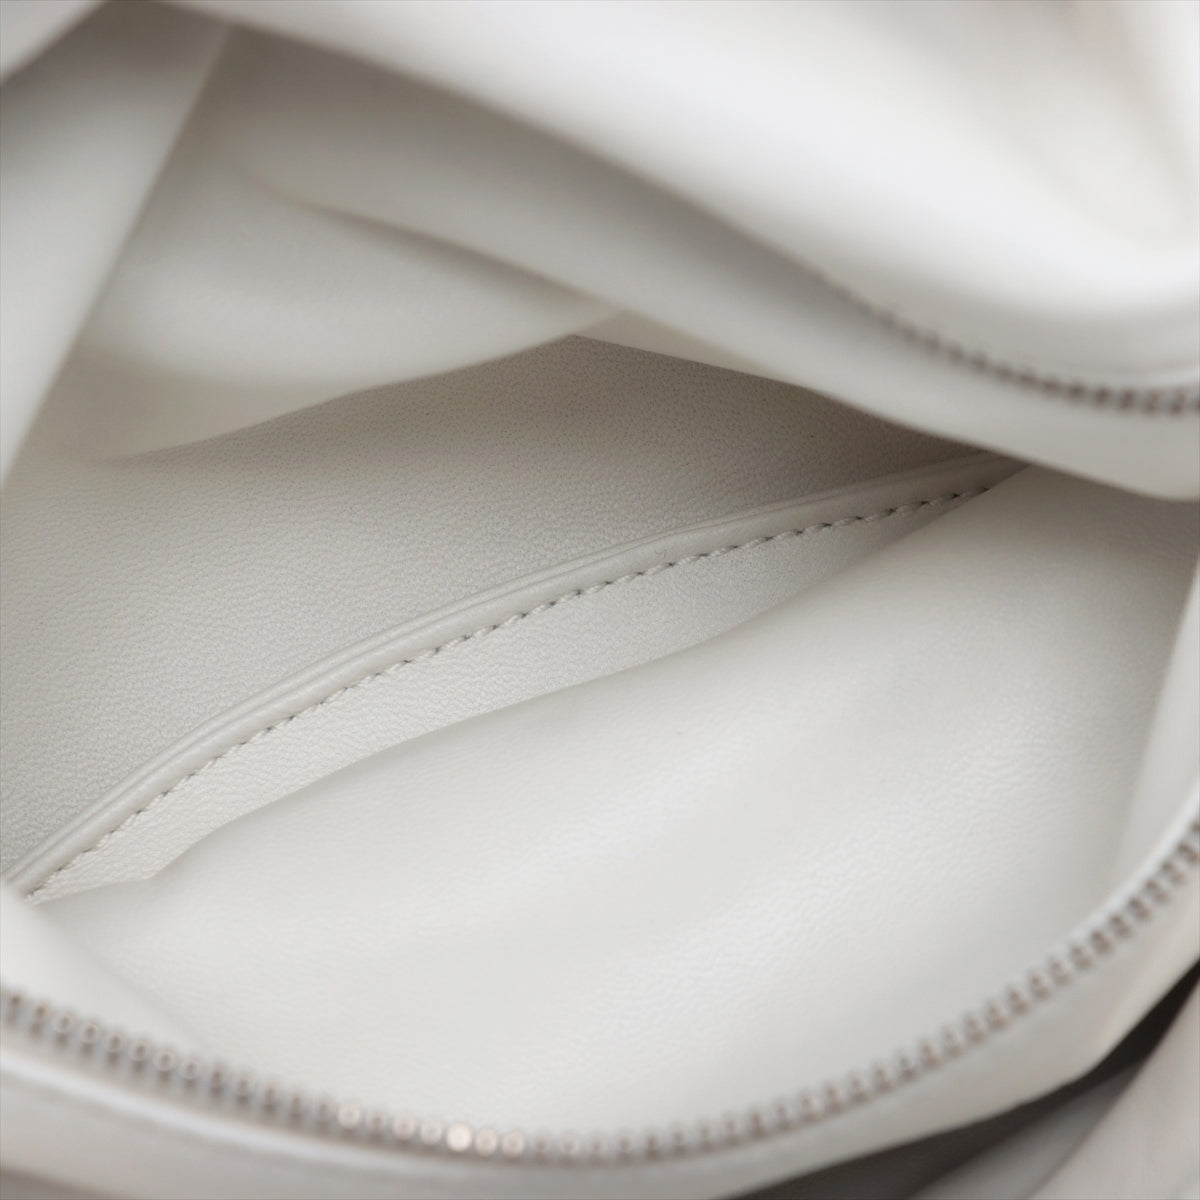 Bottega Veneta Pouch Leather Sling backpack White